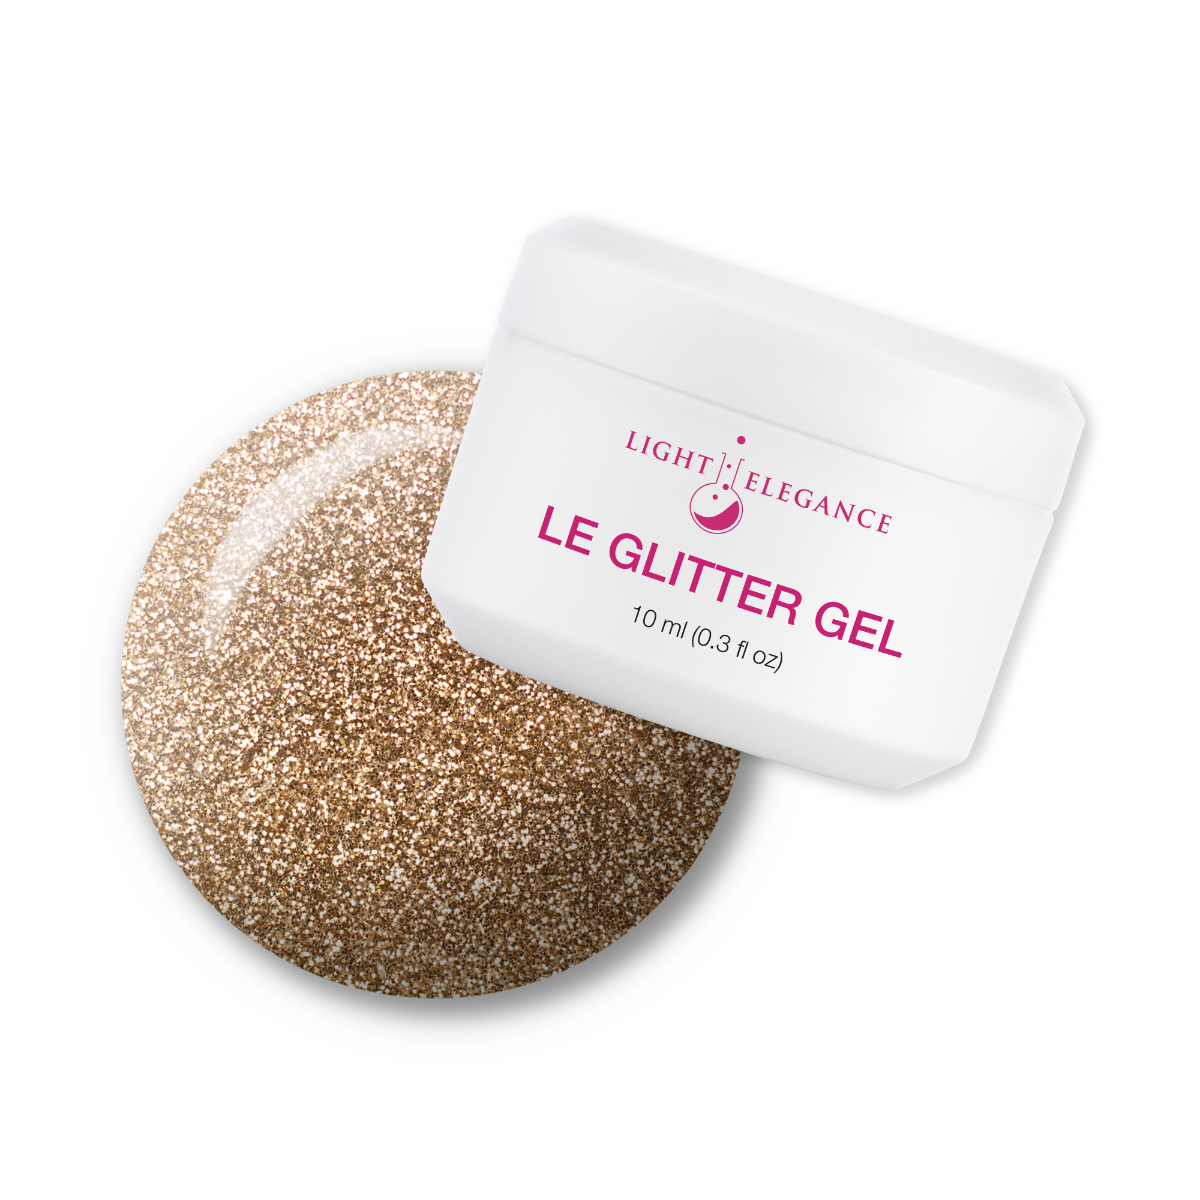 Light Elegance Glitter Gel - Gold :: New Packaging